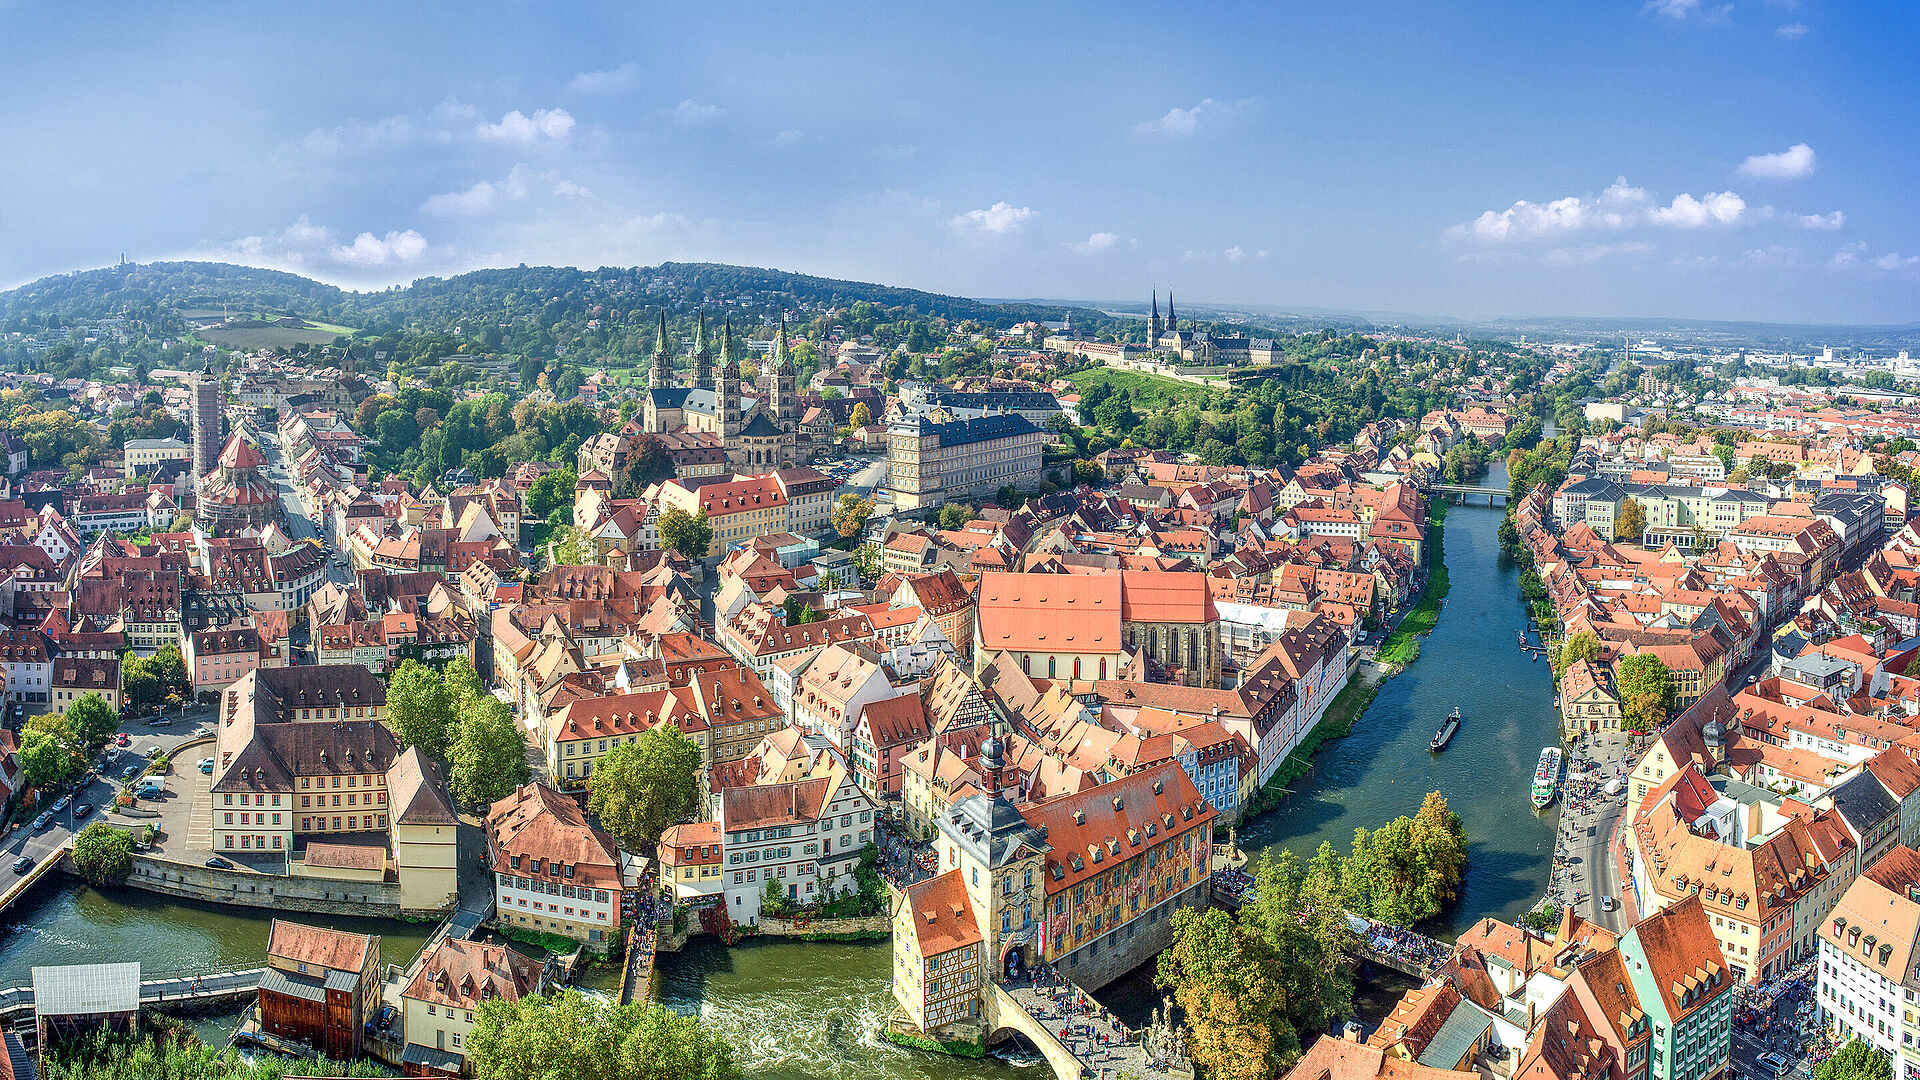 Bamberg Stadtansicht aus der Luft